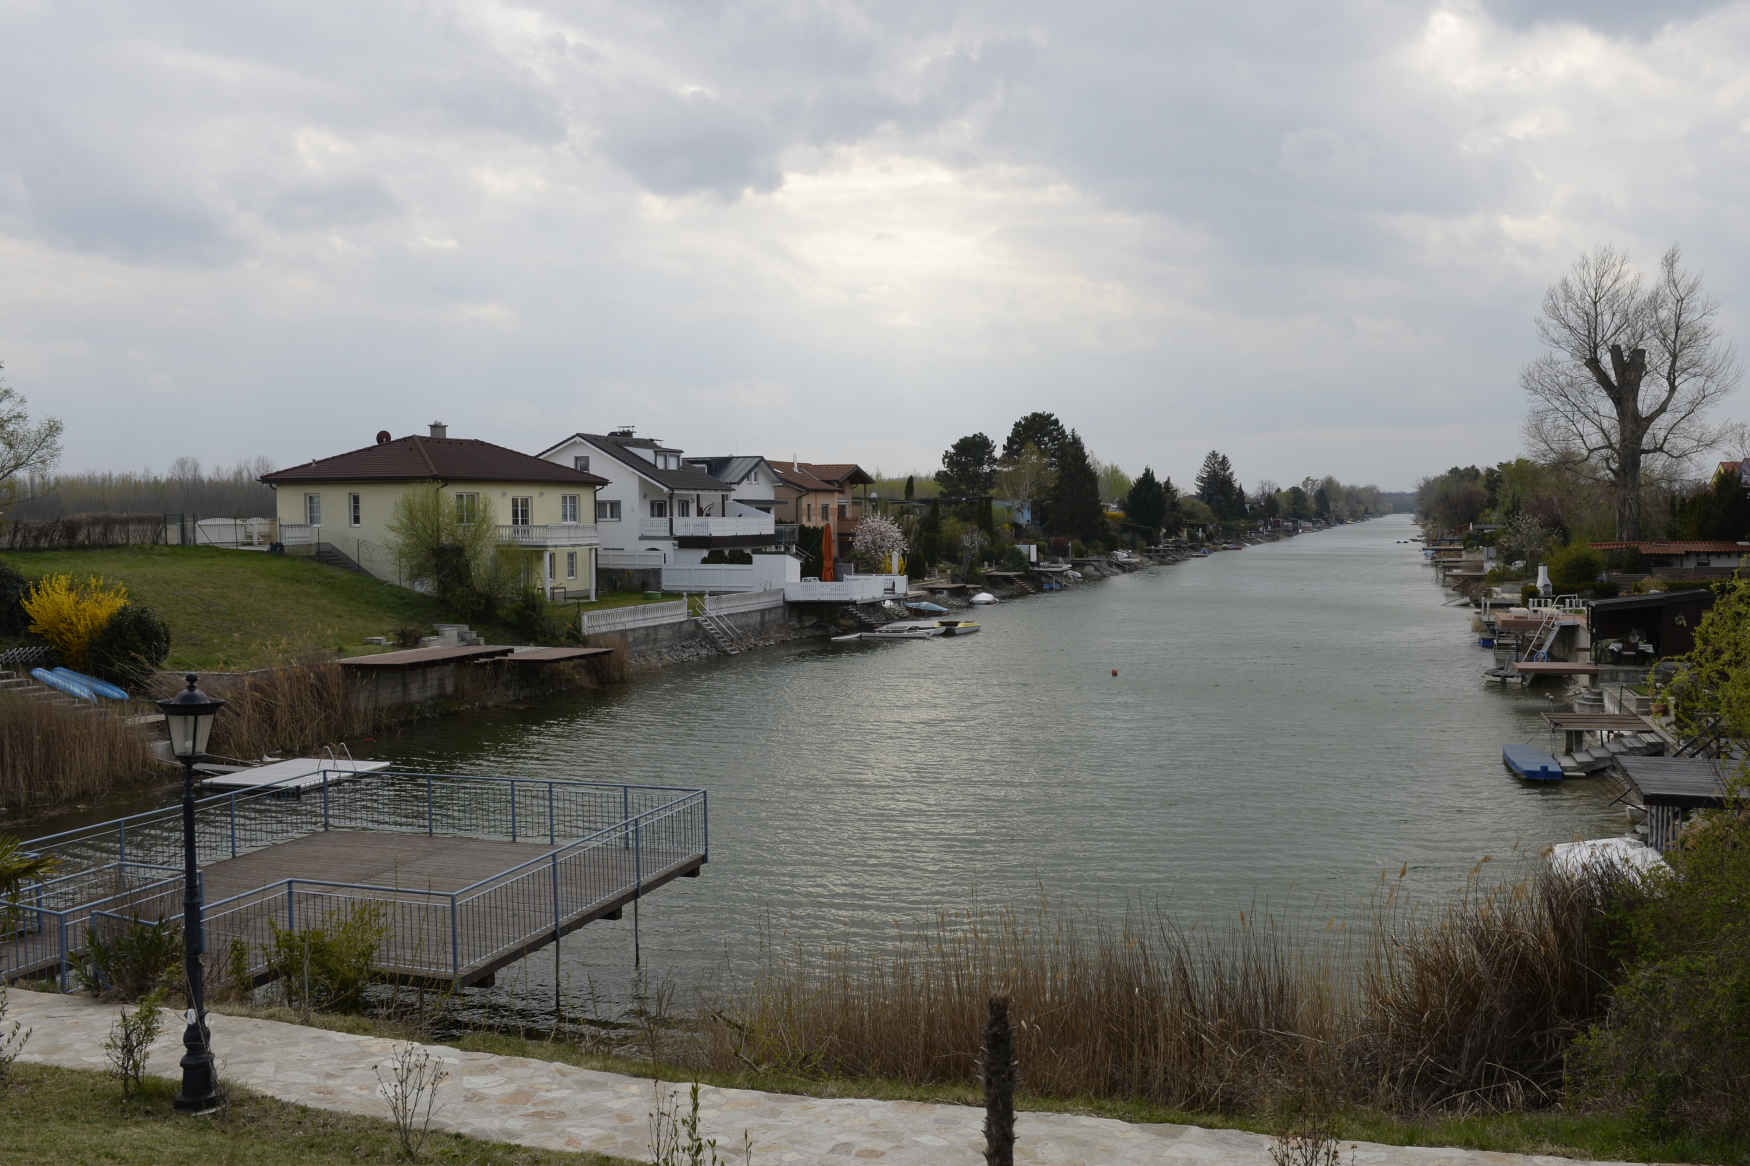 Nedokončený vodní průplav Dunaj-Odra-Labe nedaleko Vídně